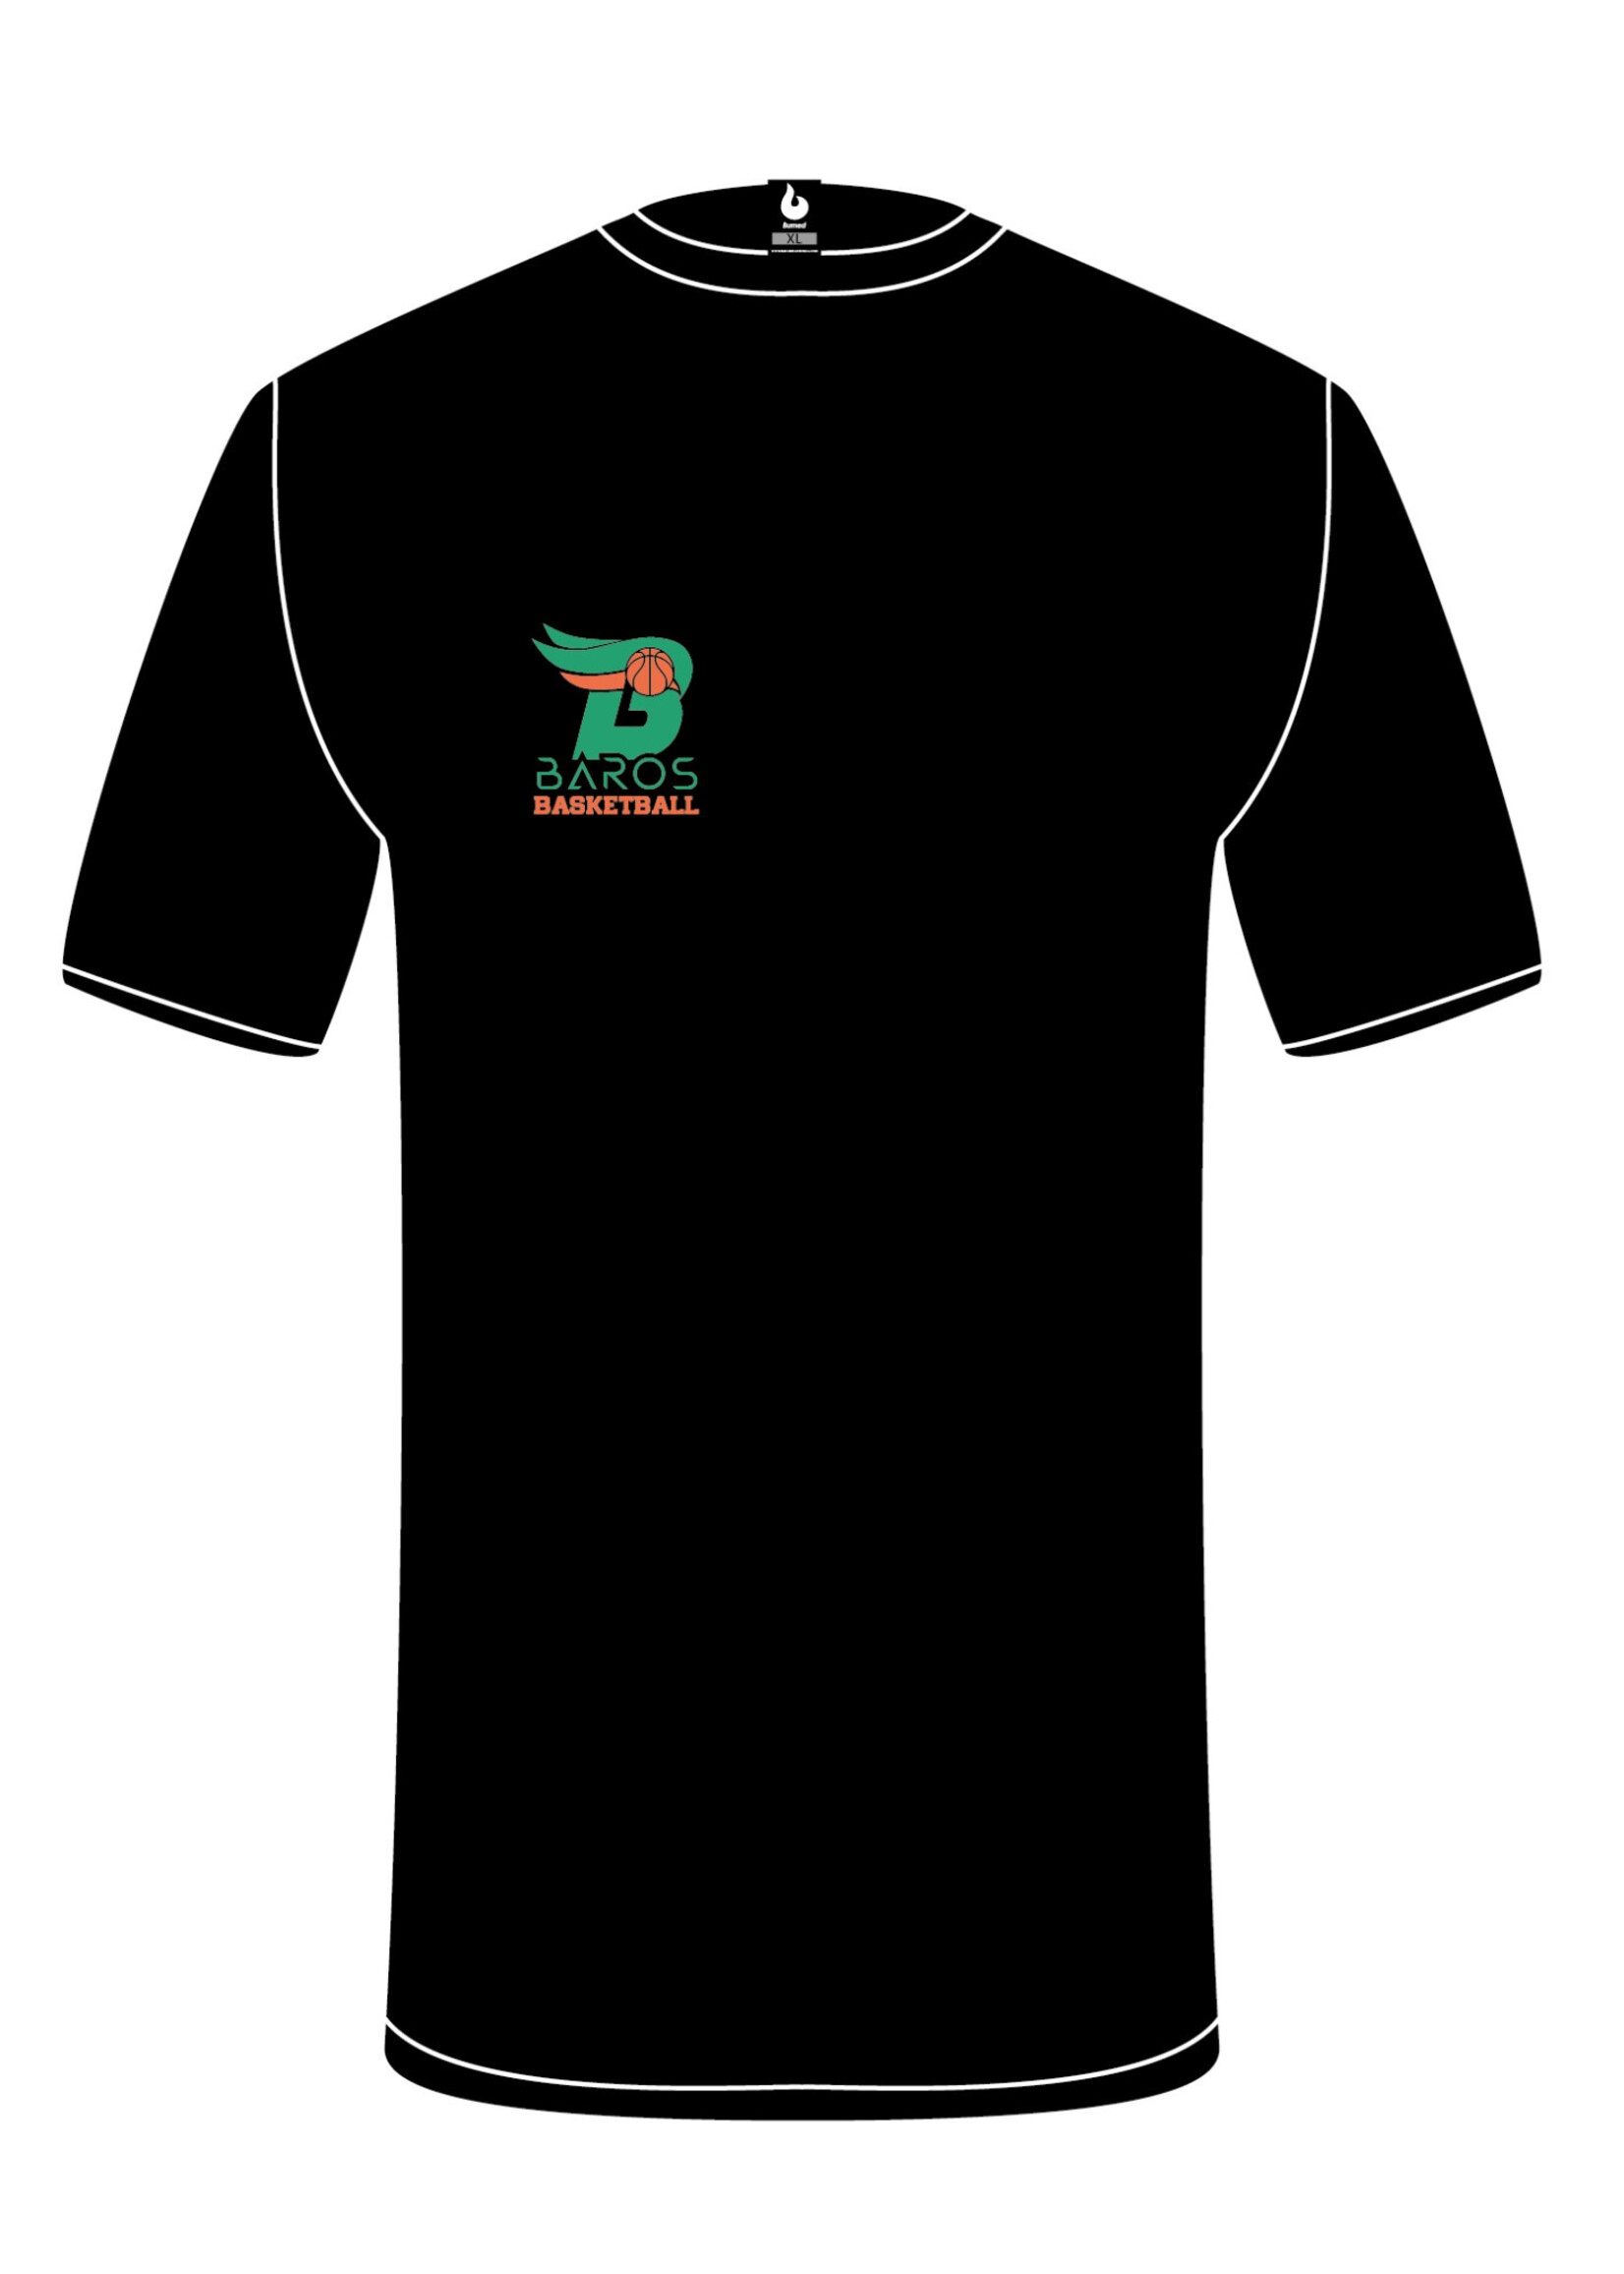 Burned Teamwear EBV Baros T-shirt Borduursel Zwart